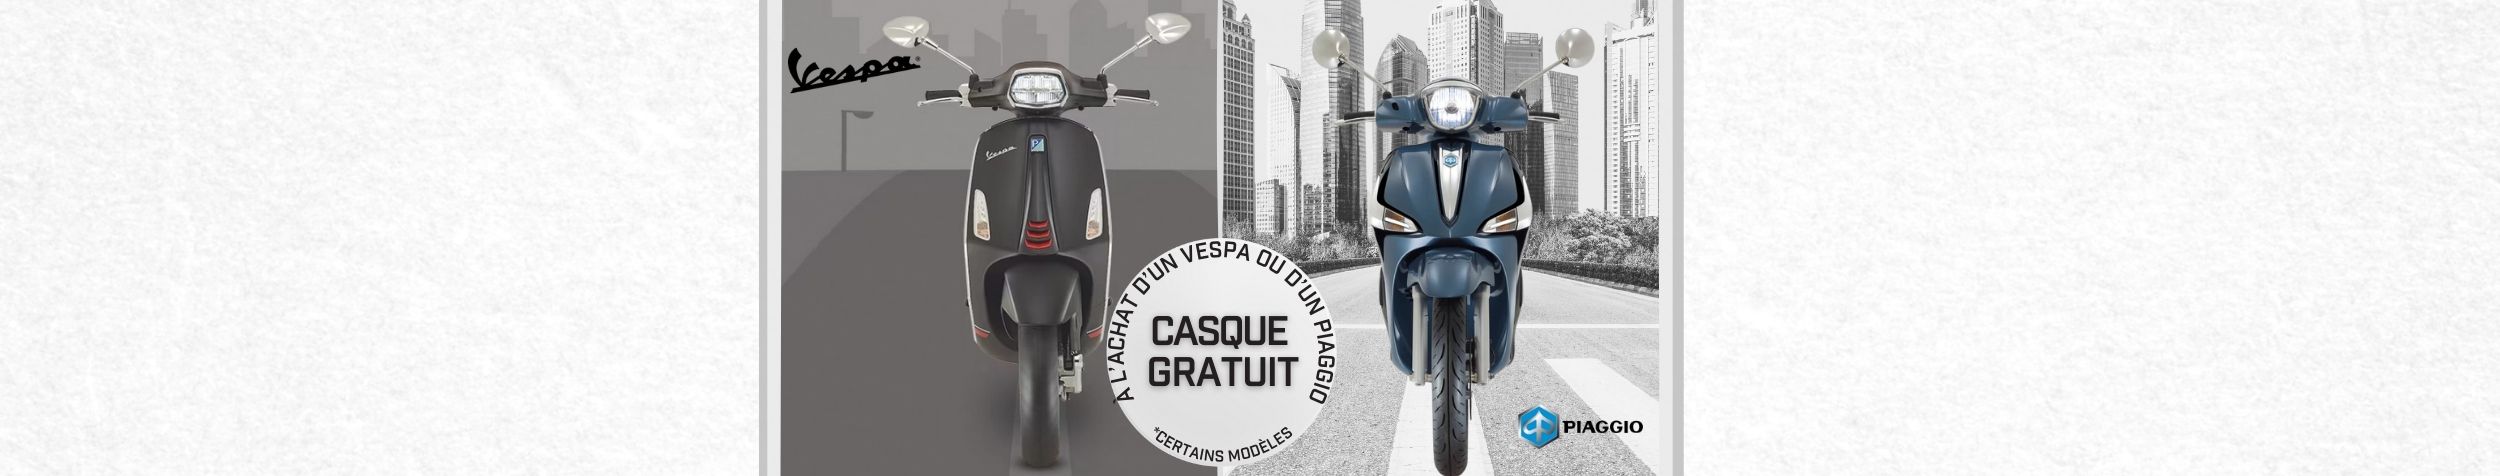 Promotion lancement Vespa & Piaggio